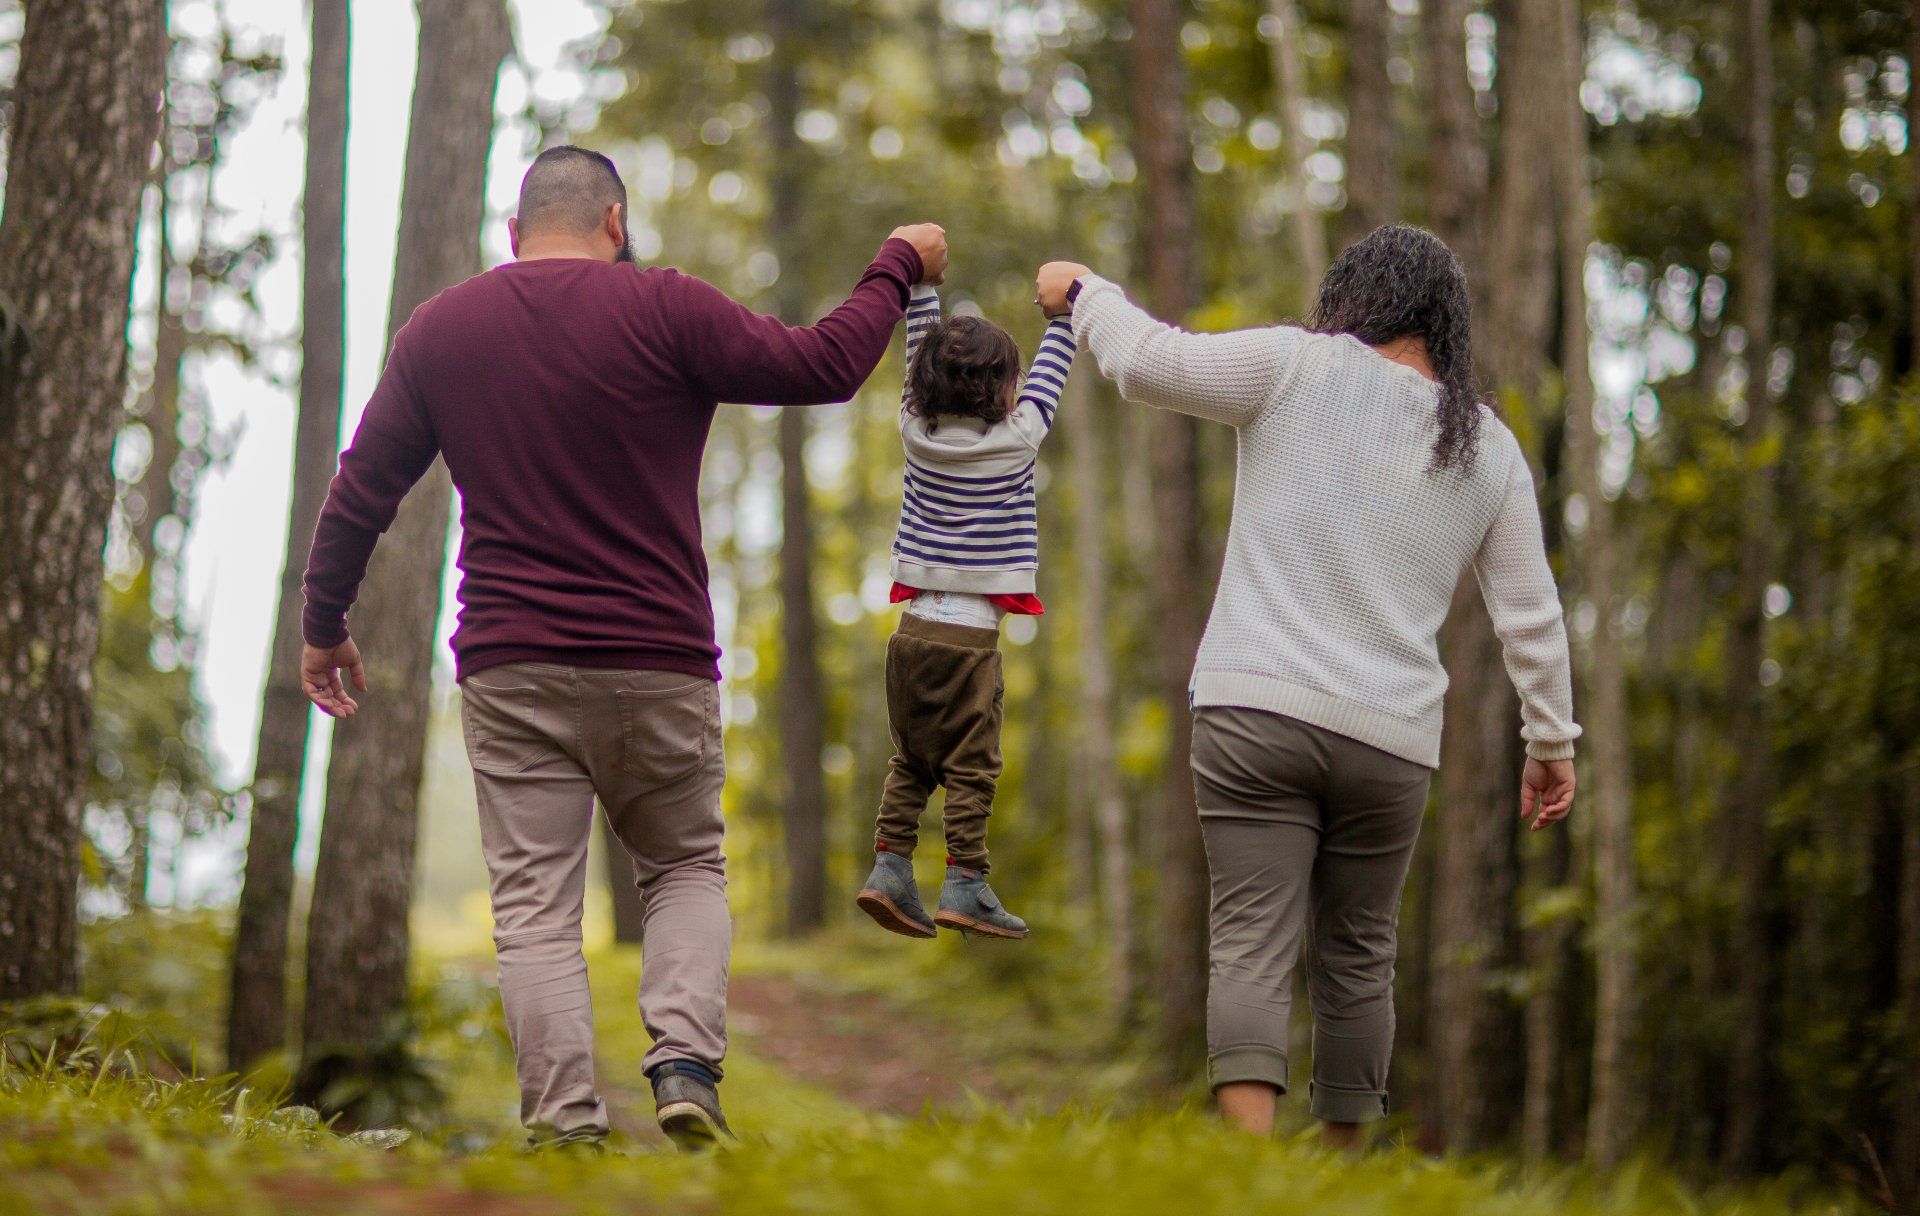 Padres con niños caminando en el bosque tomados de la mano.